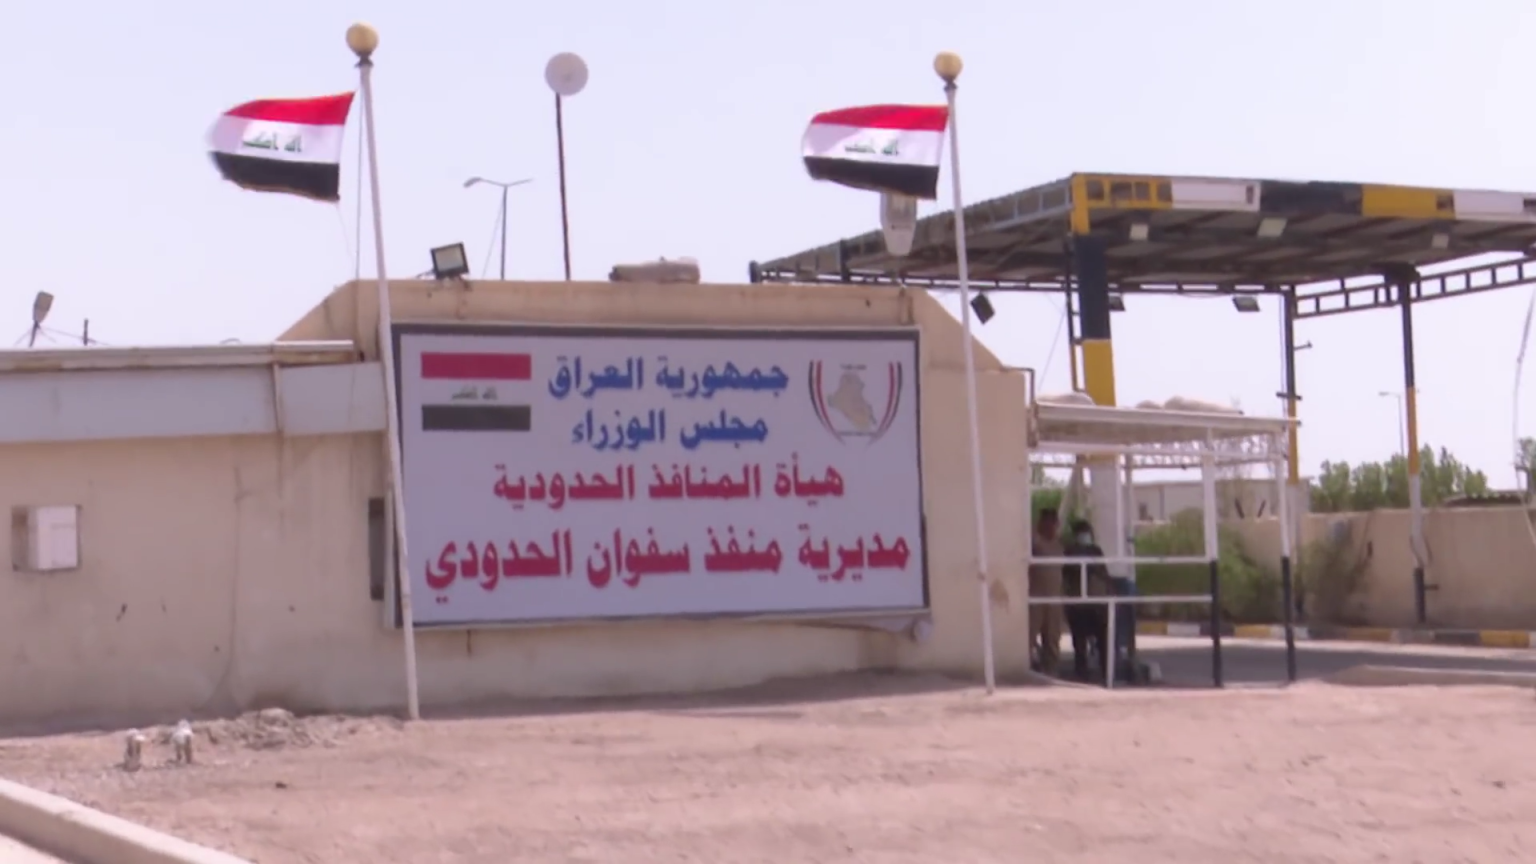 العراق يصدر منتجات وطنية إلى الكويت عبر سفوان